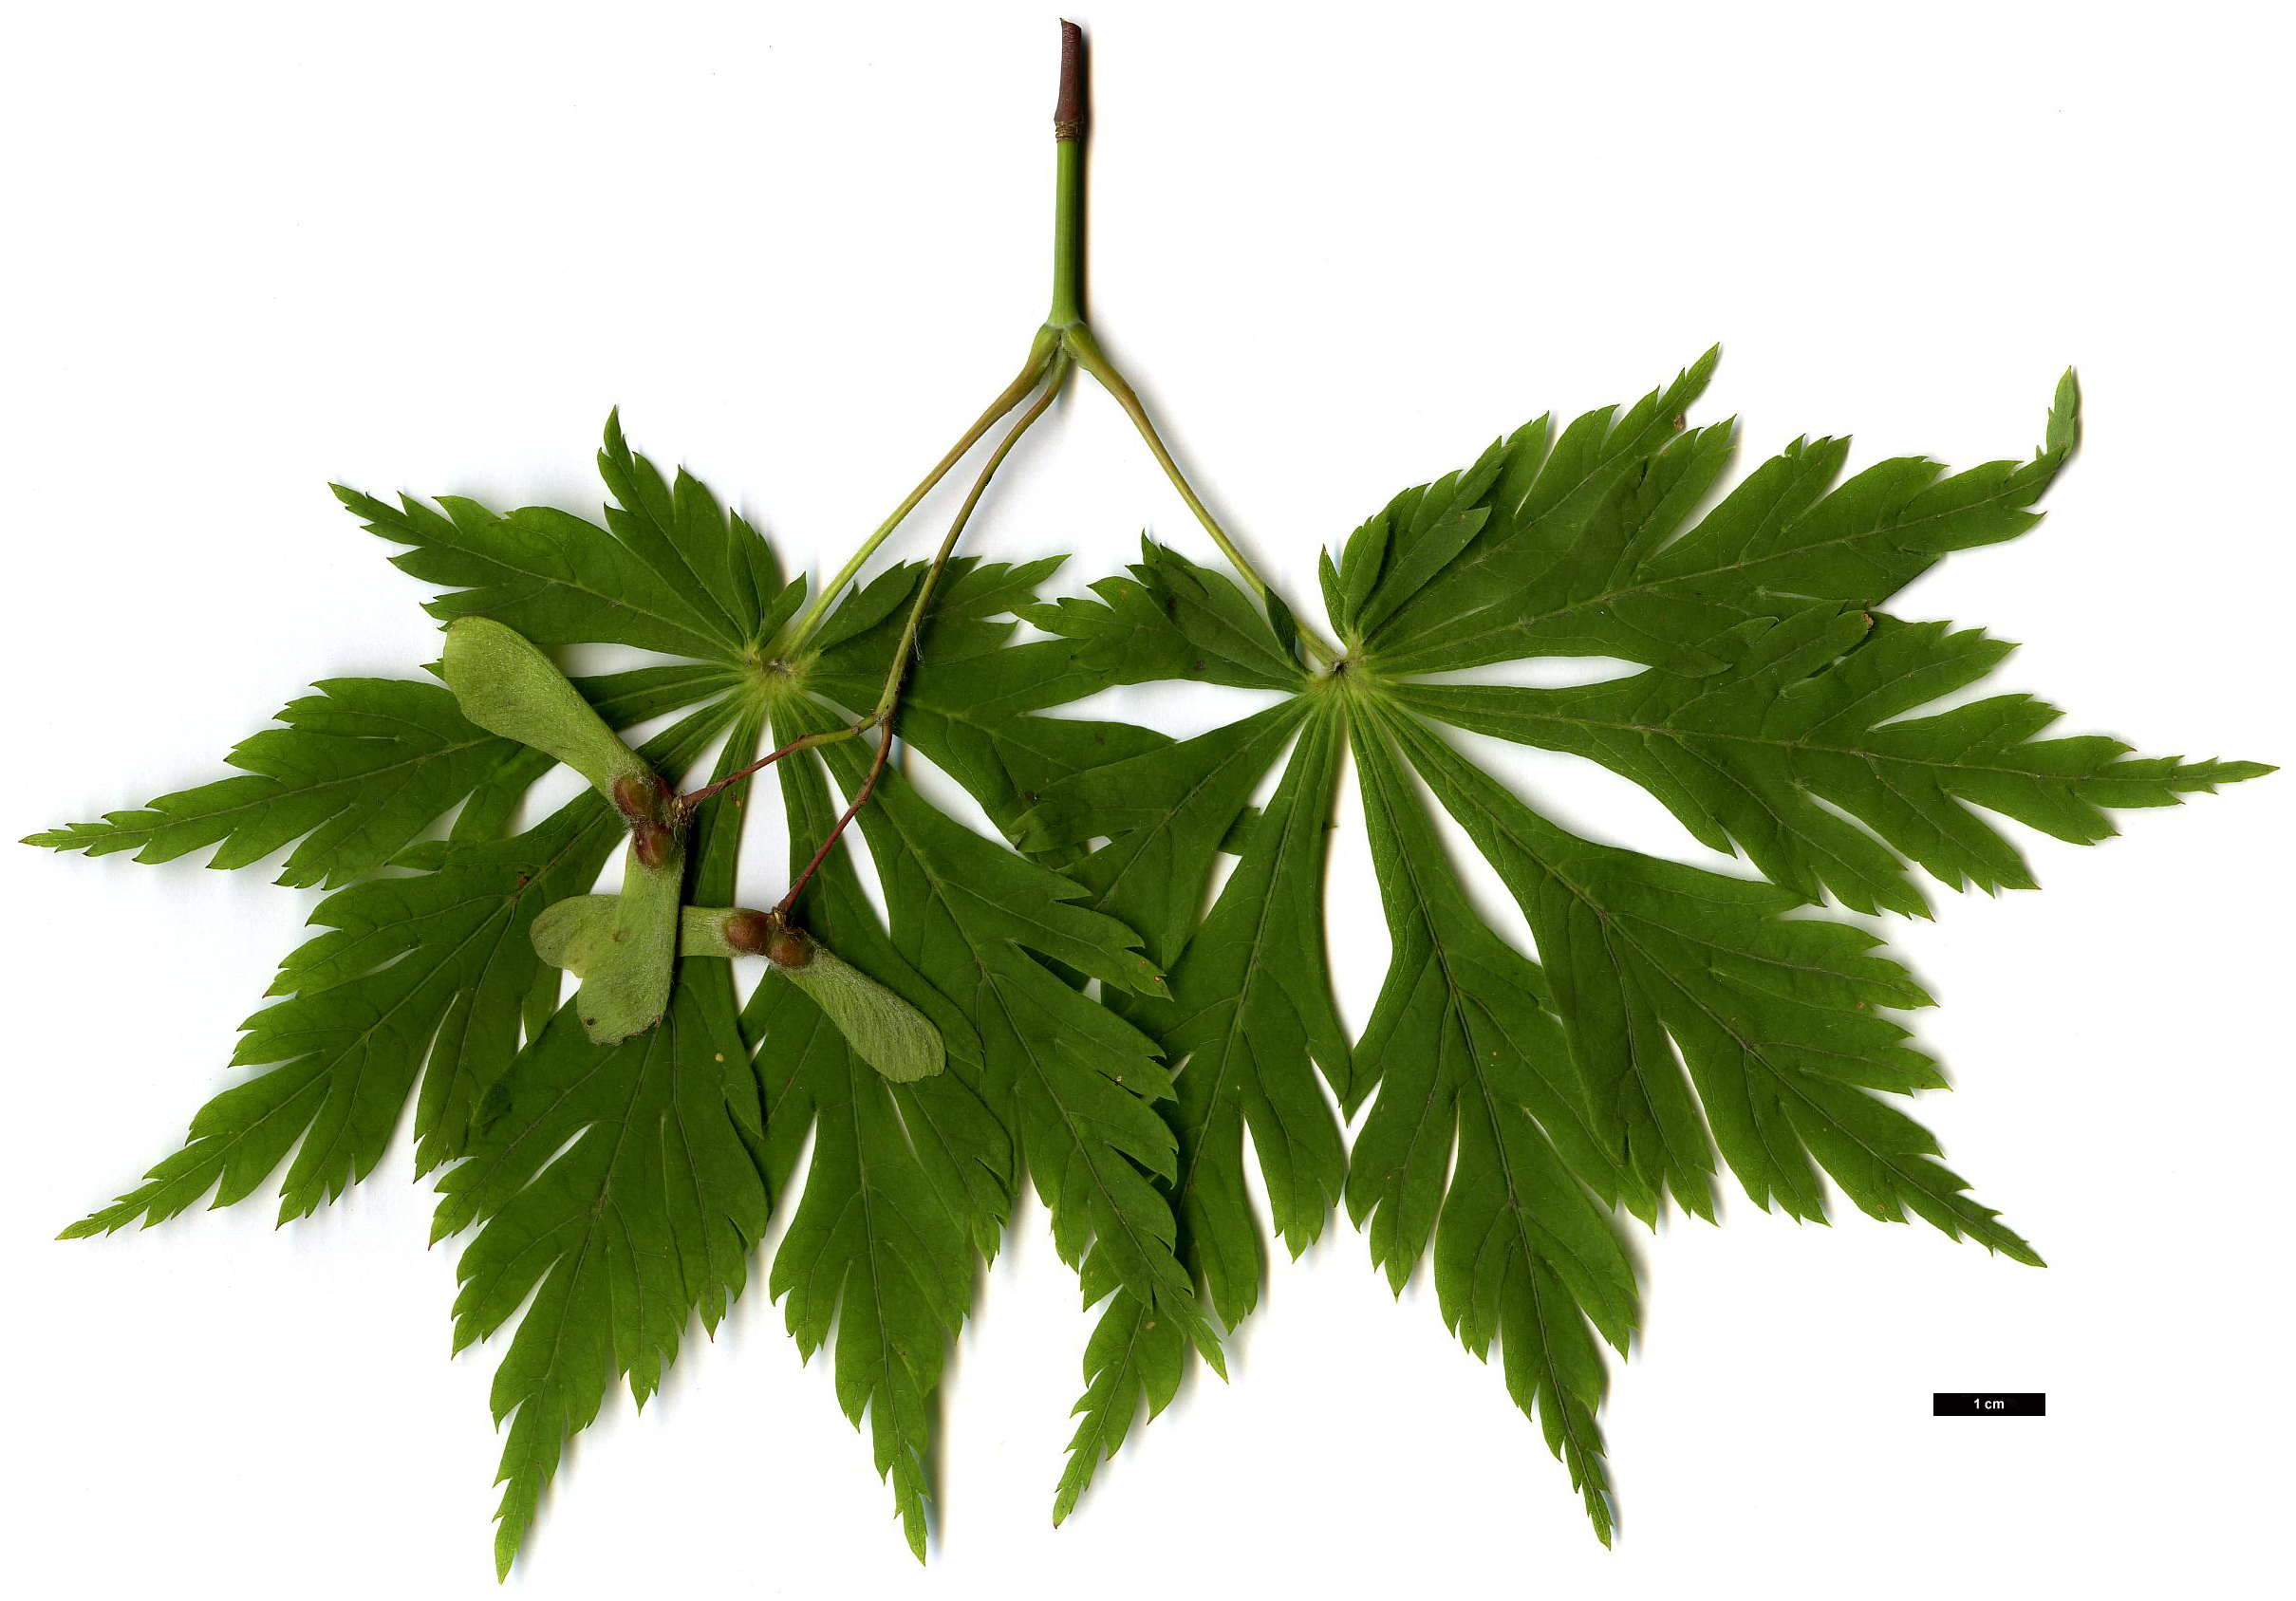 High resolution image: Family: Sapindaceae - Genus: Acer - Taxon: japonicum - SpeciesSub: 'Aconitifolium'